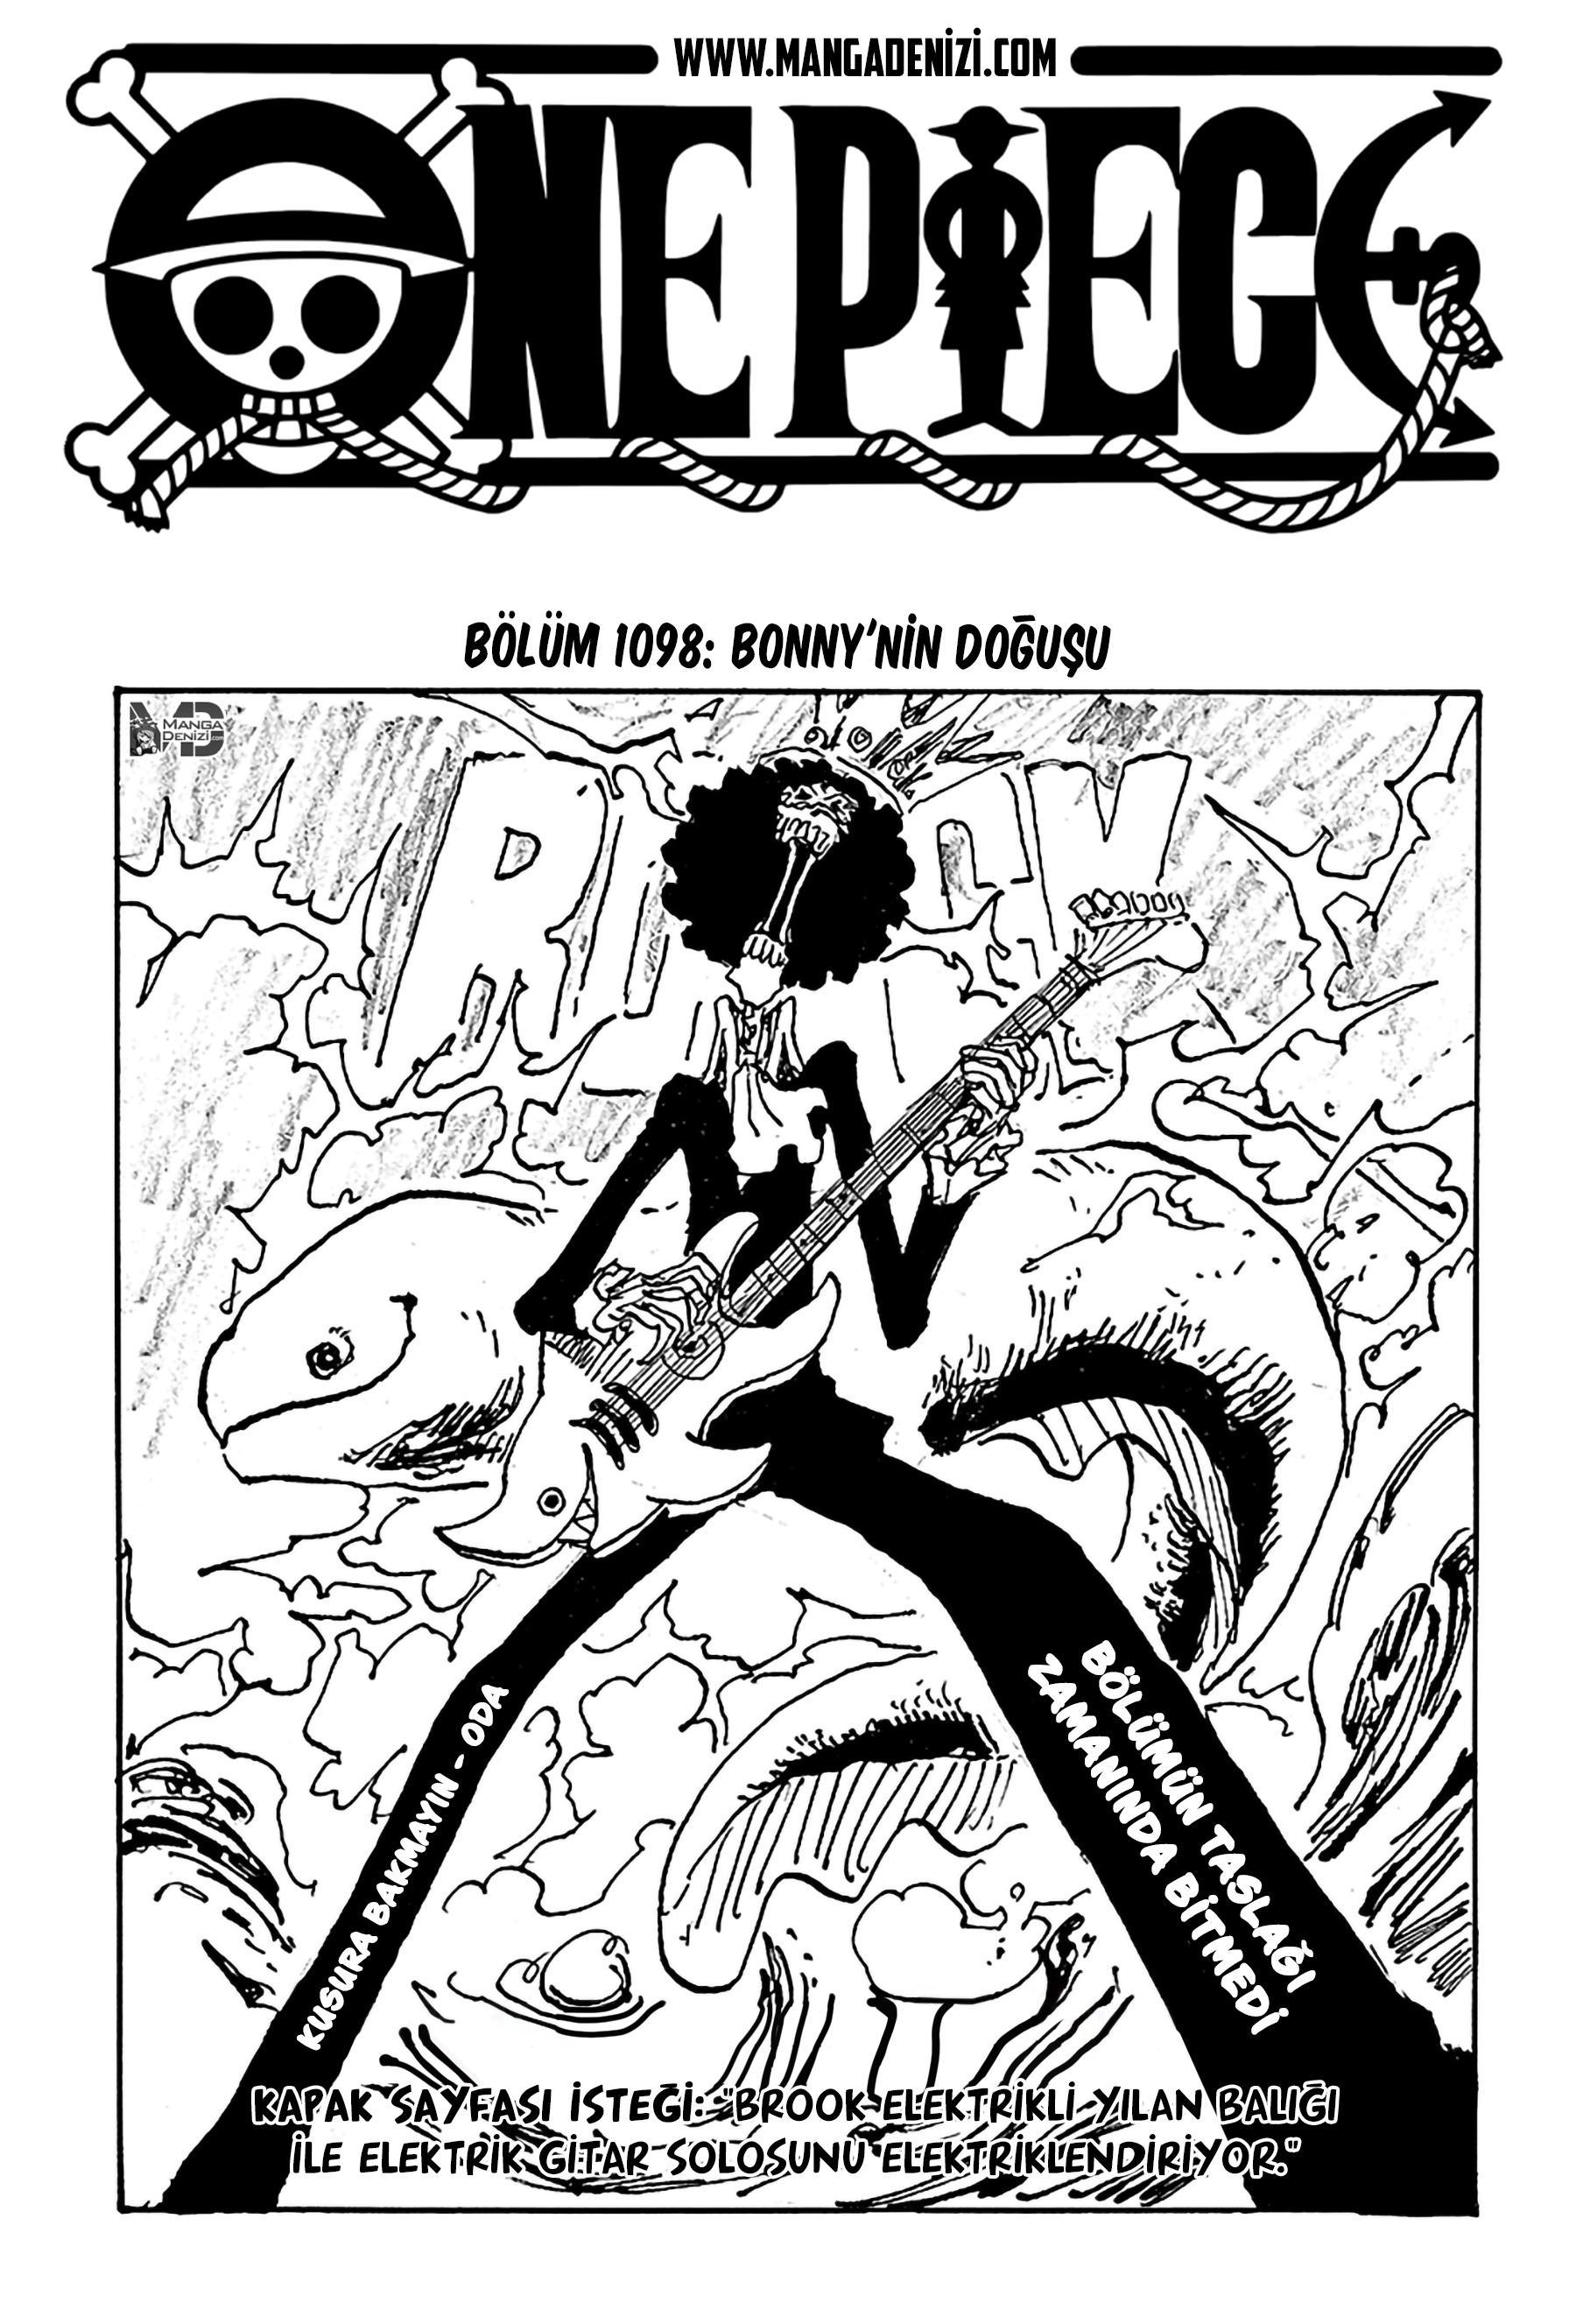 One Piece mangasının 1098 bölümünün 2. sayfasını okuyorsunuz.